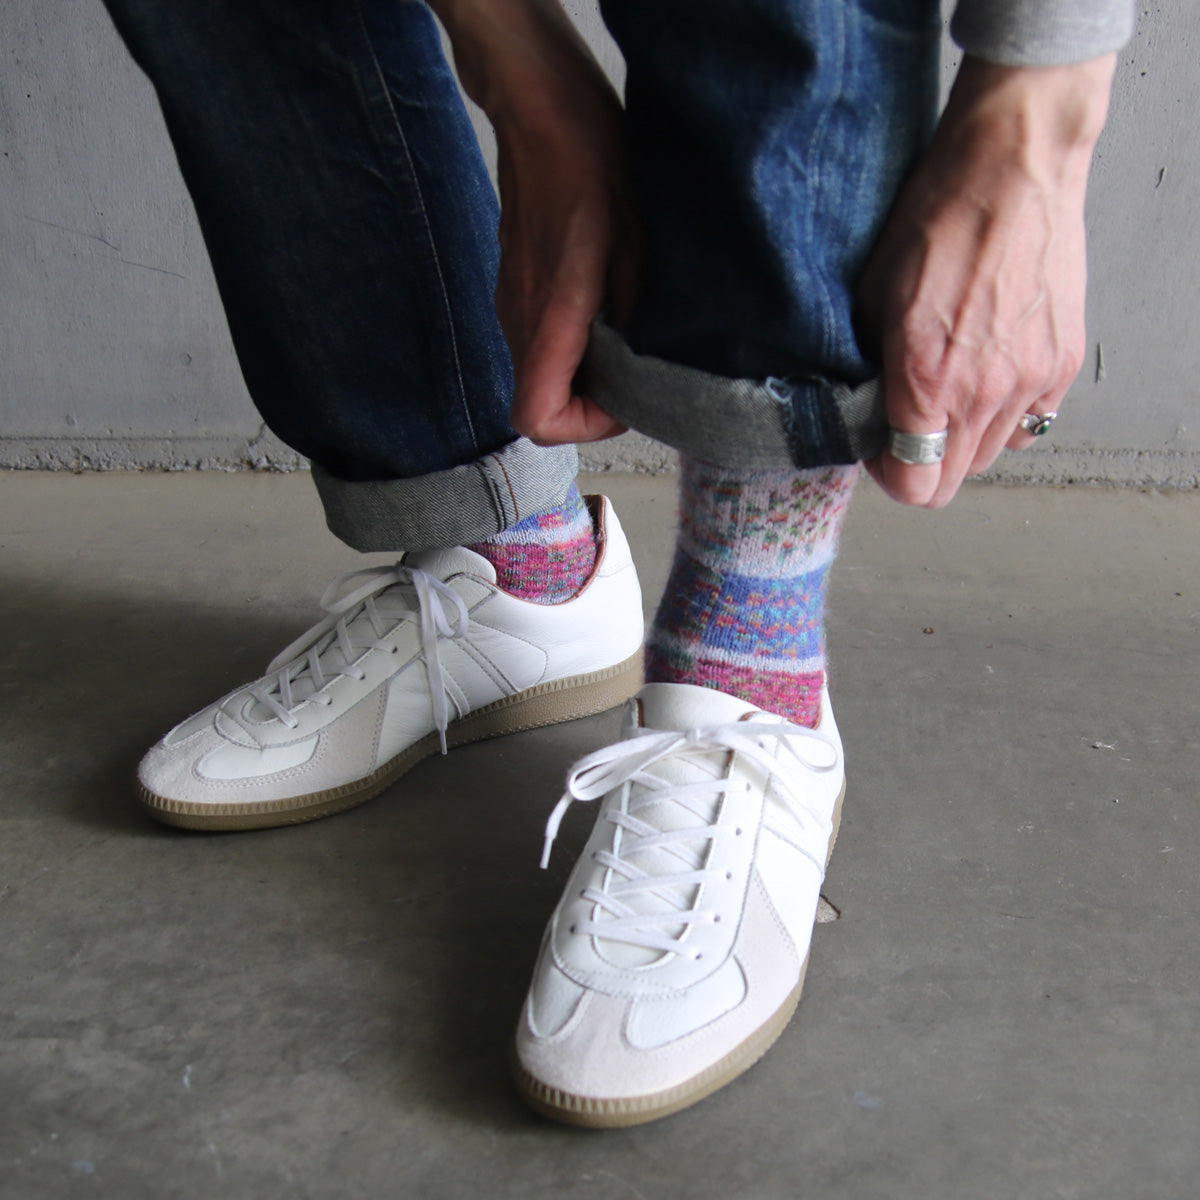 ラナート (LANART) 米国製ベビーアルパカソックス靴下 Artistic Baby Alpaca Socks[MONET/ROSET]